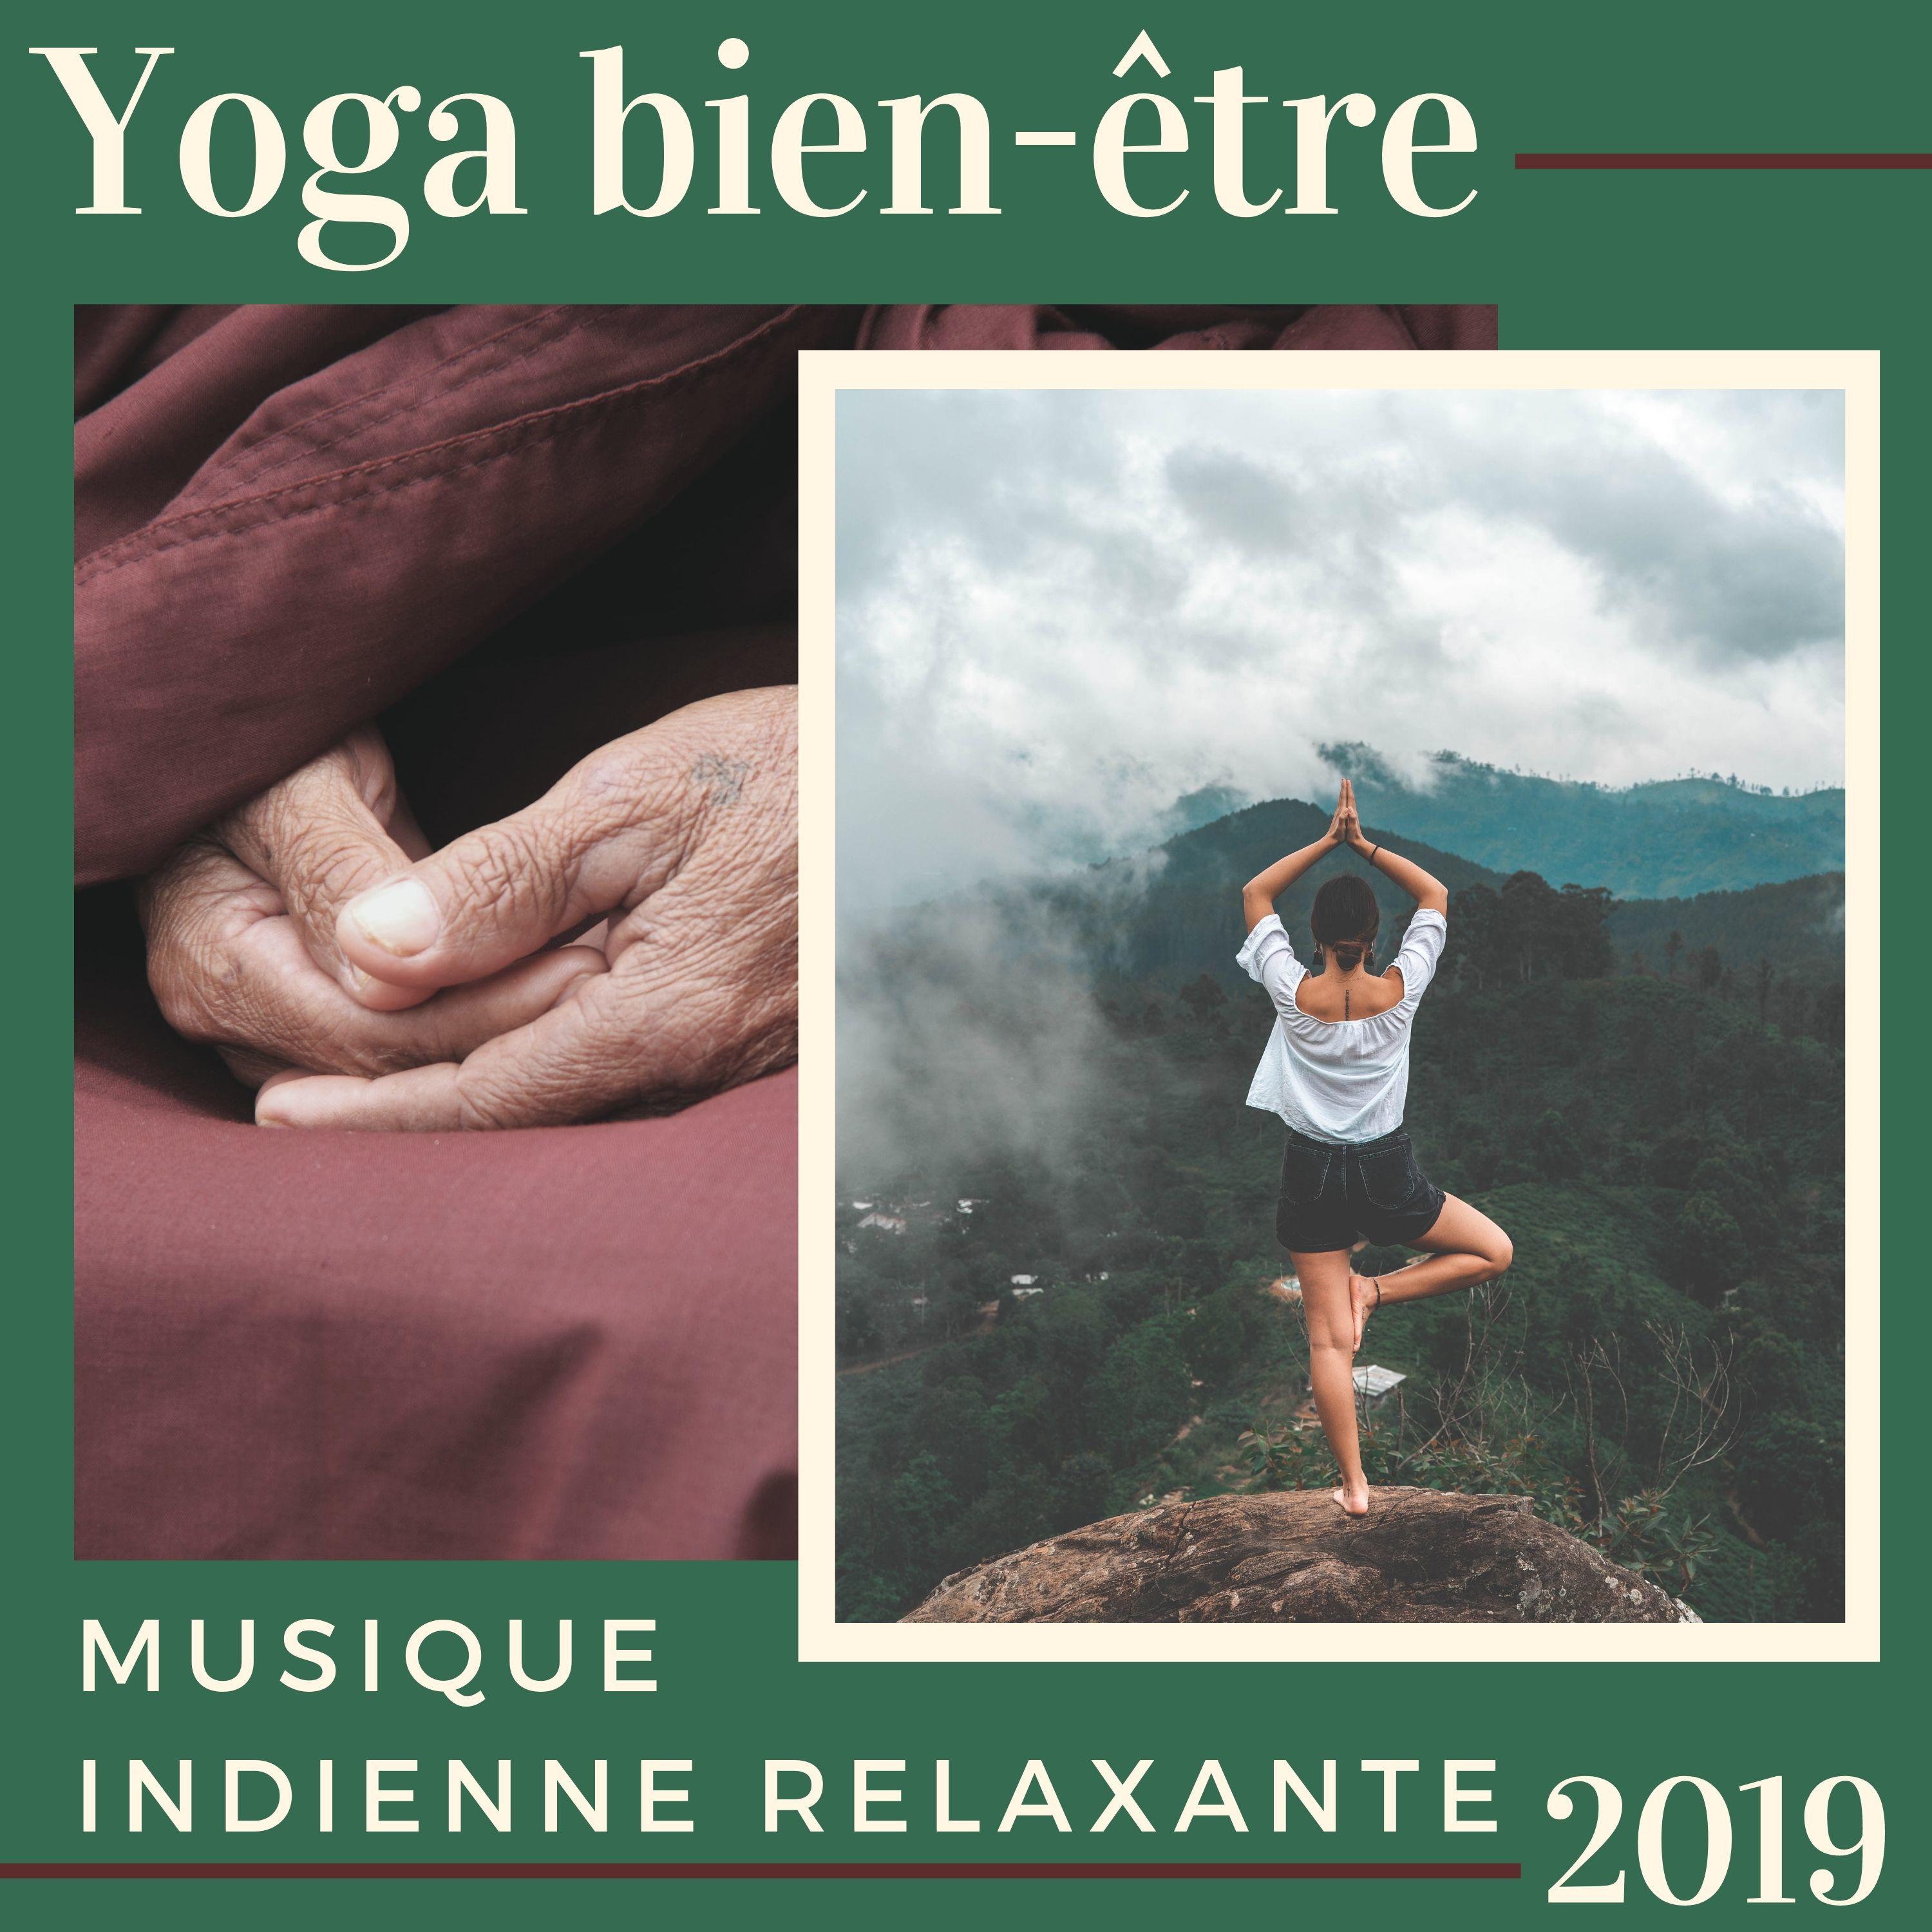 Yoga bien tre 2019  Musique Indienne Relaxante